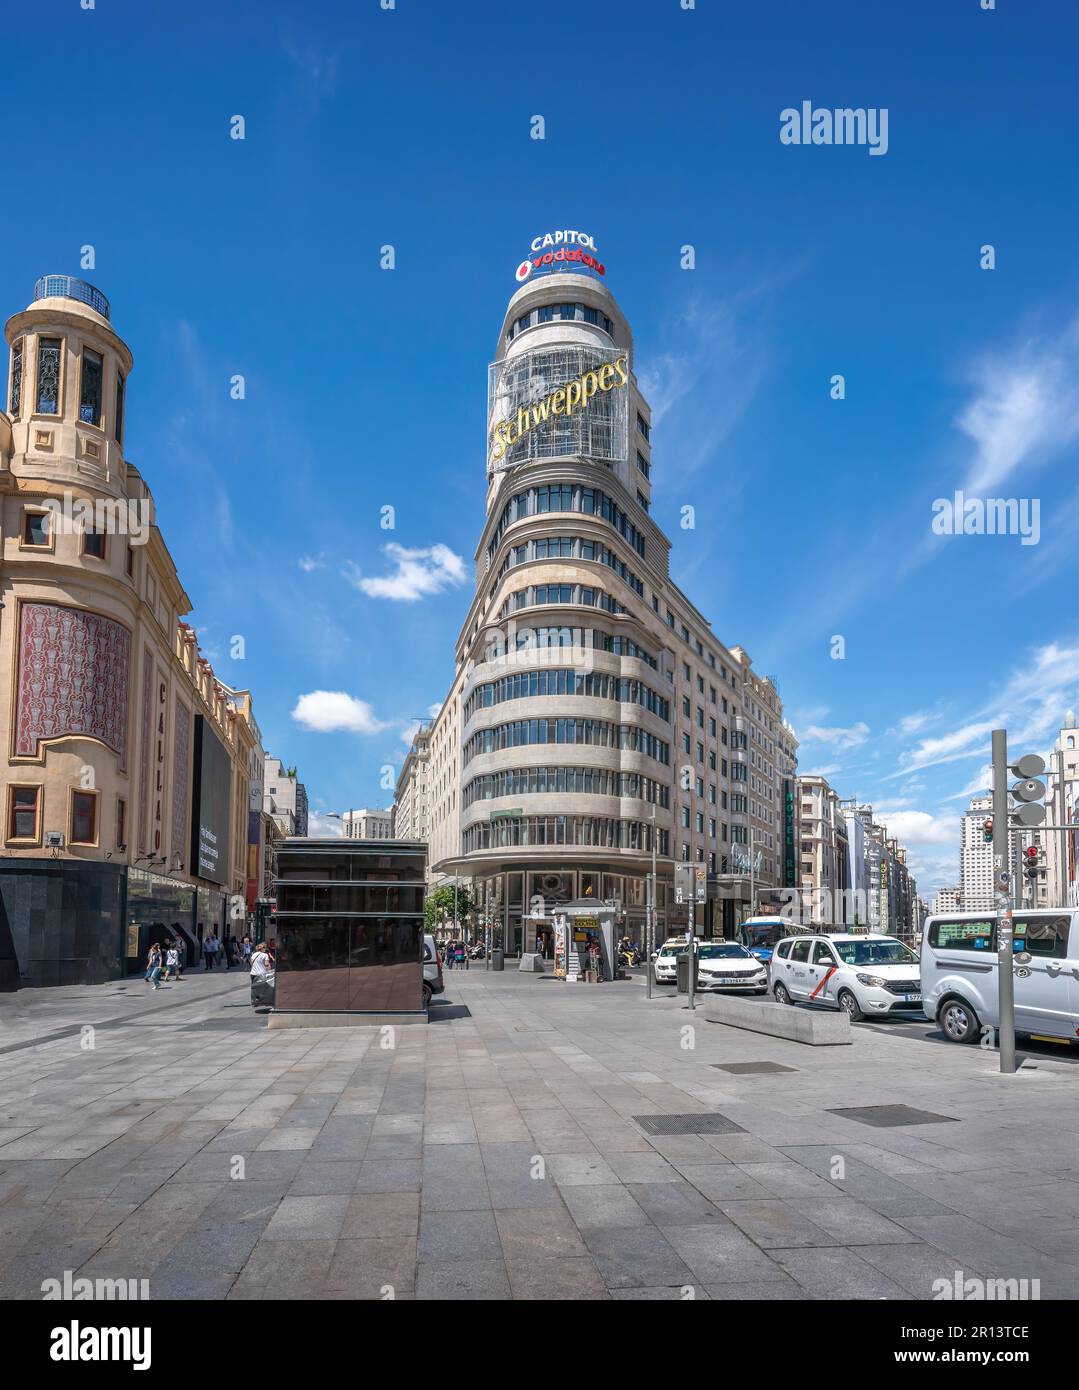 Edificio Capitol (oder Carrion) Gebäude in der Gran Via Straße und Plaza Callao Square - Madrid, Spanien Stockfoto